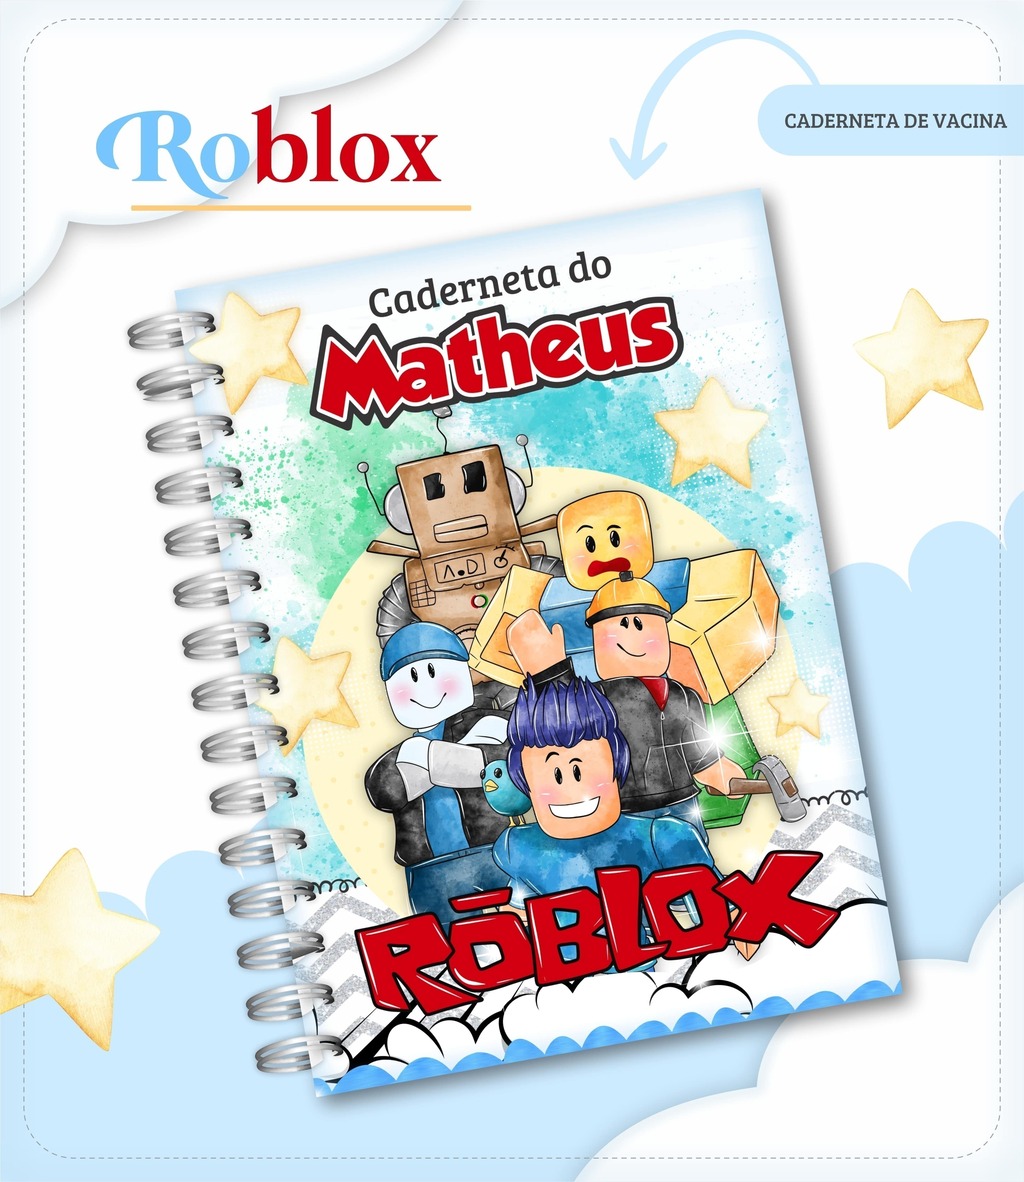 Arquivo Digital Caderneta Saúde Roblox I Arquivos Digitais By Giovann